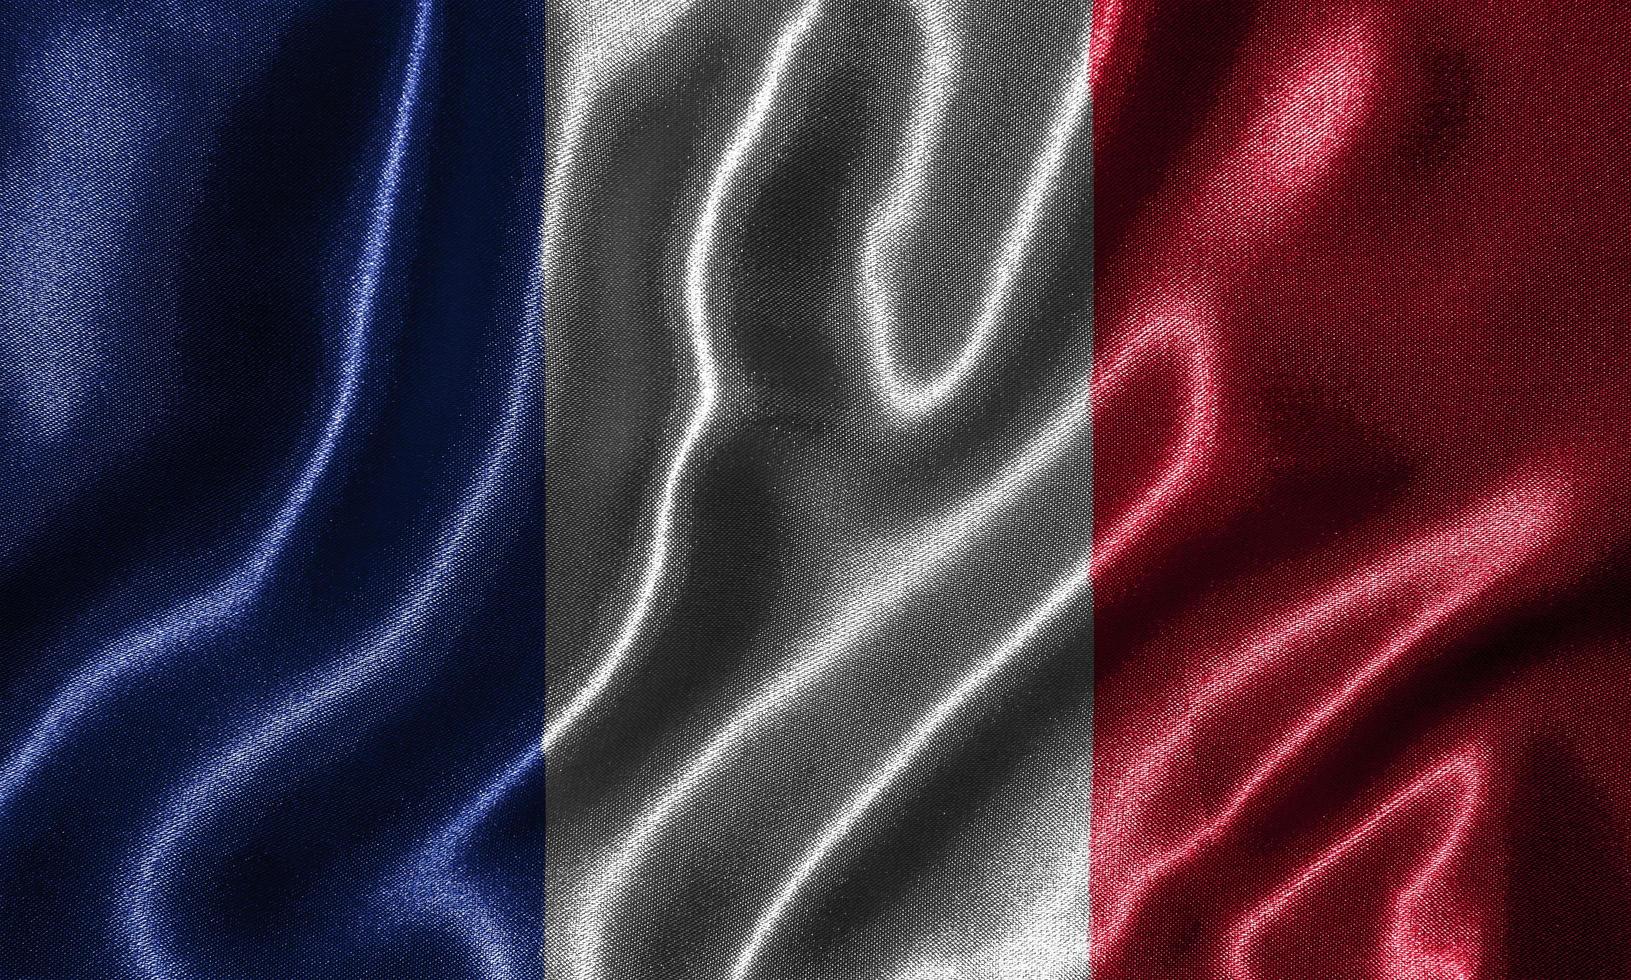 behang door de vlag van Frankrijk en wapperende vlag door stof. foto